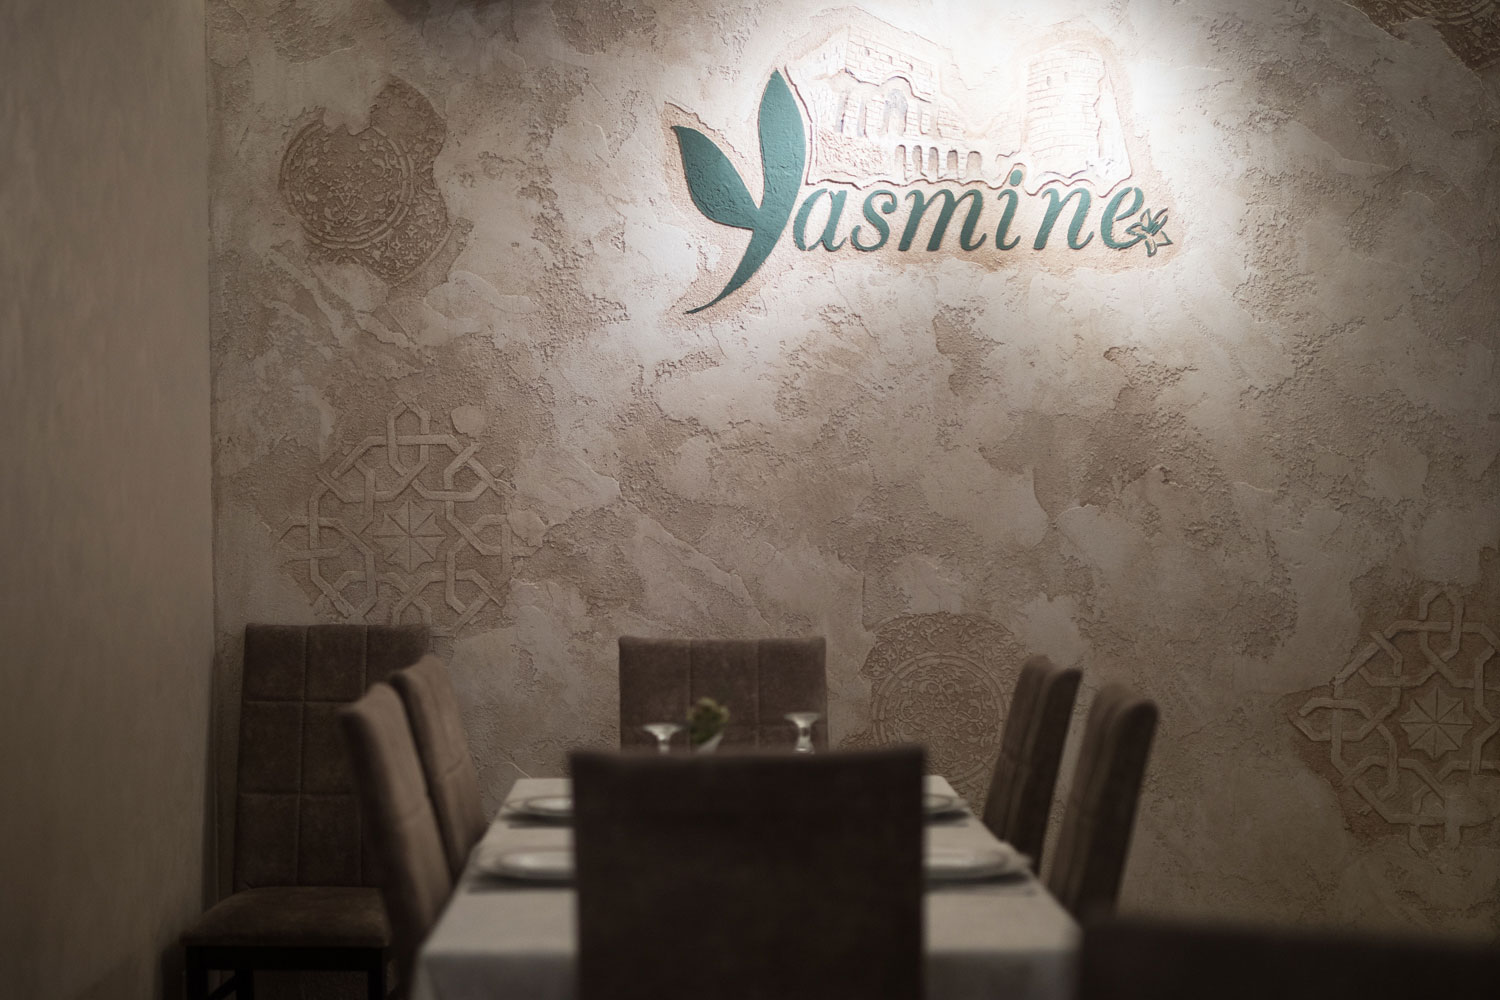 Yasmine restaurant. Տիկին Հասմիկի բաղադրատոմսերն ու 4 սեղանով սկսած գործը